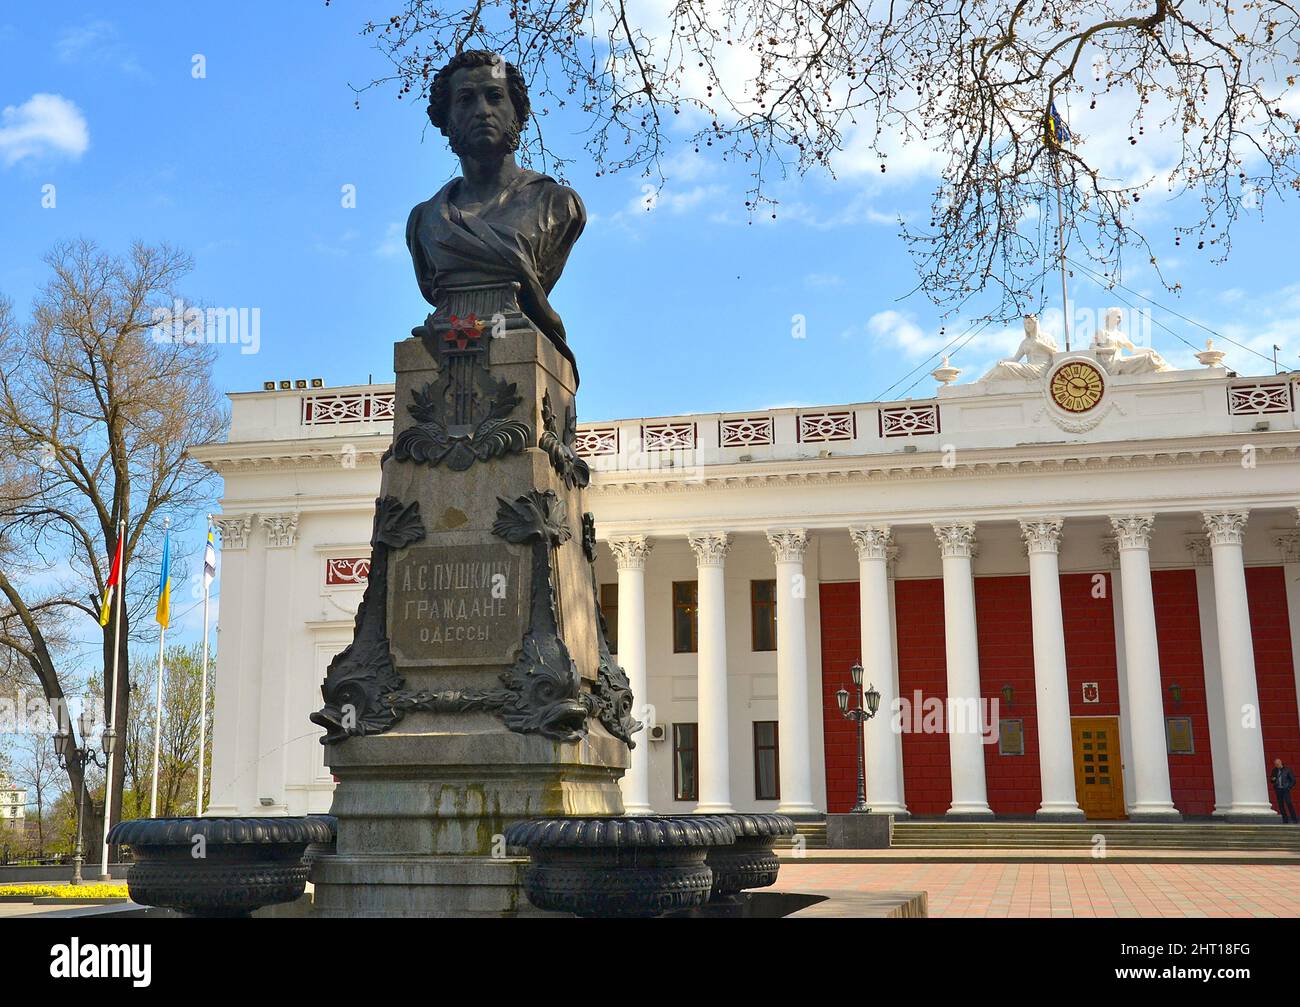 Odessa, Ukraine - 19 avril 2019:Monument à Alexandre Sergeyevitch Pouchkine, écrivain russe, devant l'hôtel de ville d'Odessa, au début des mers Banque D'Images